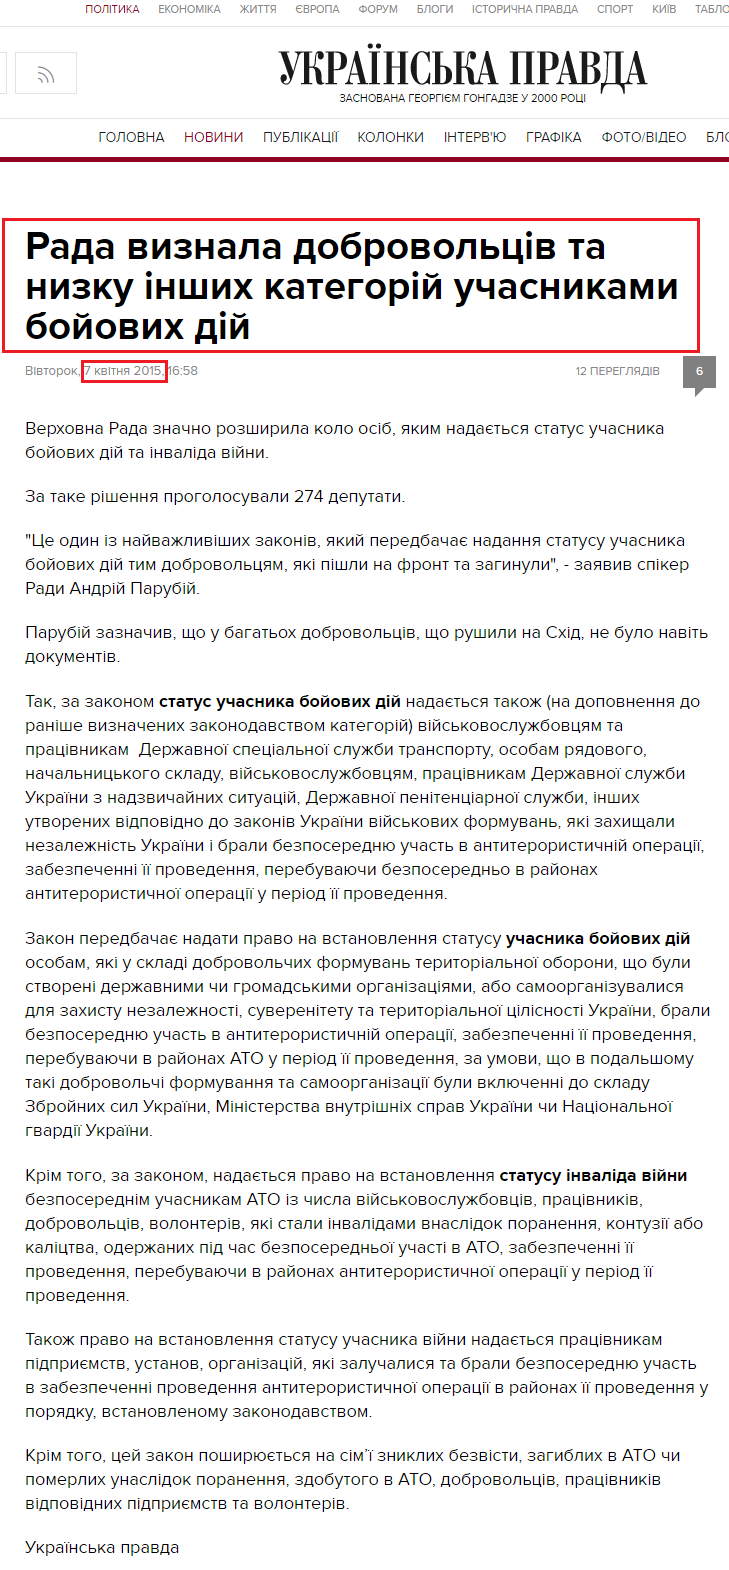 http://www.pravda.com.ua/news/2015/04/7/7064021/